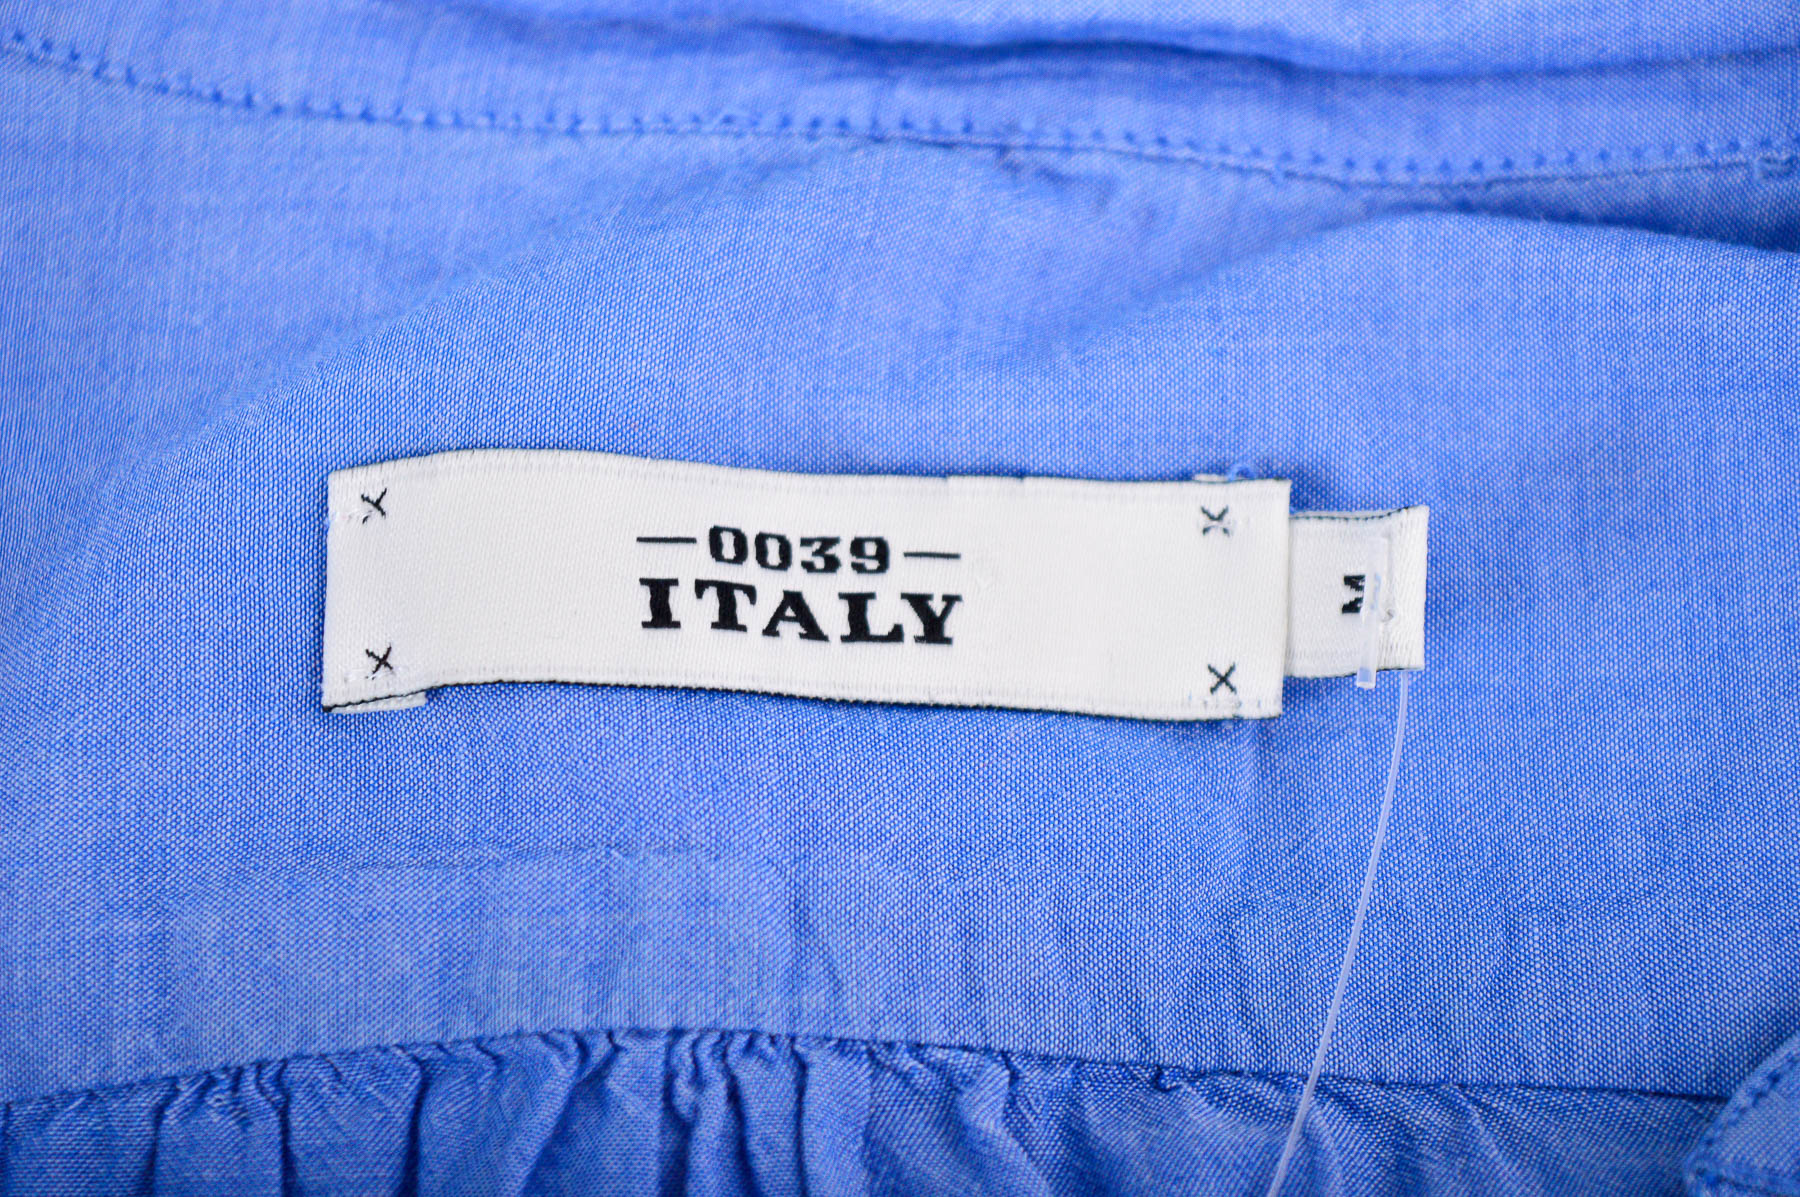 Дамска риза - 0039 Italy - 2